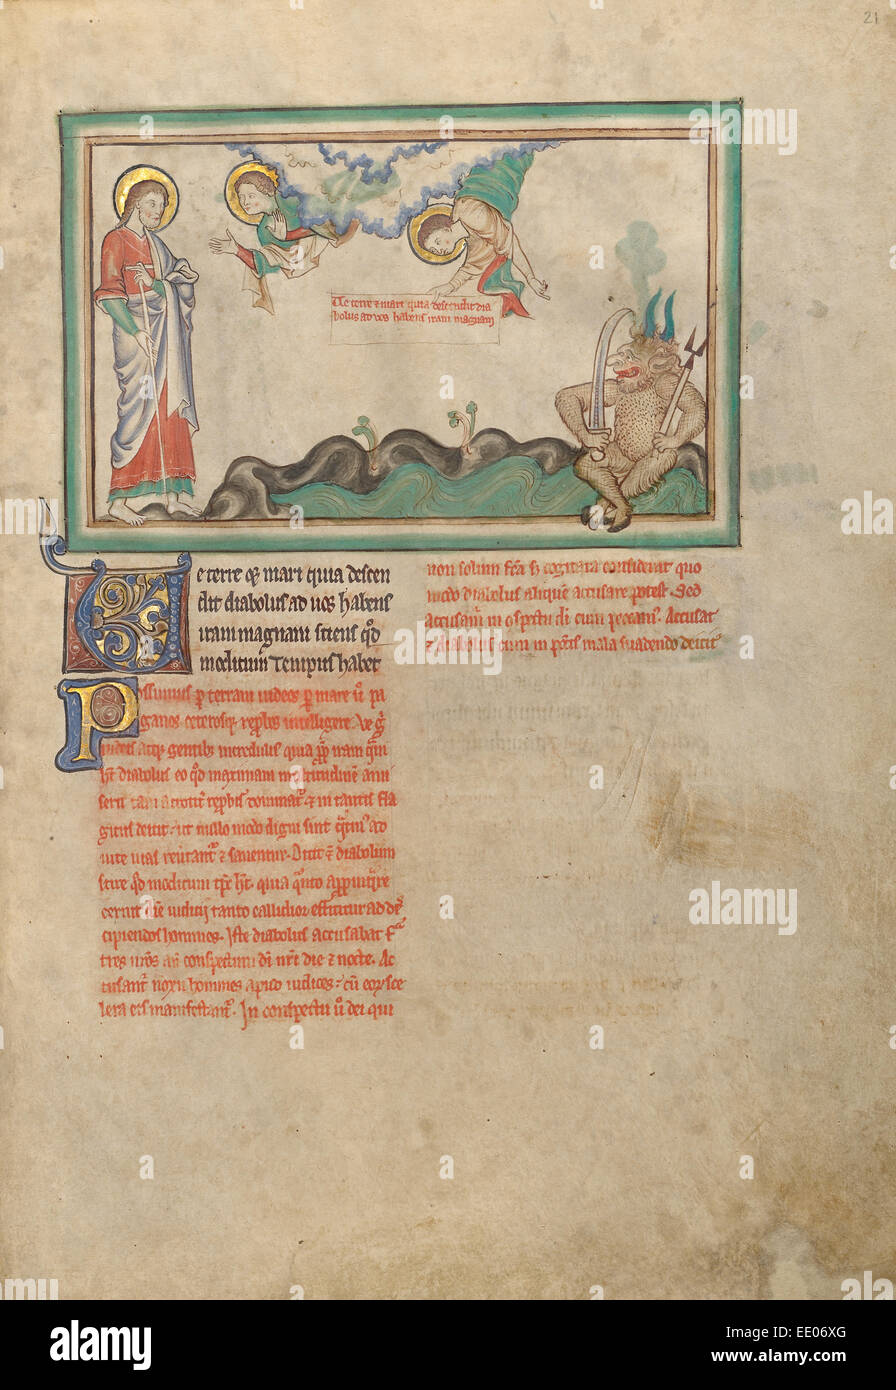 Le diable de la Terre ; inconnu ; Londres (probablement), l'Angleterre, l'Europe ; environ 1255 - 1260 ; couleurs Tempera, feuille d'or Banque D'Images